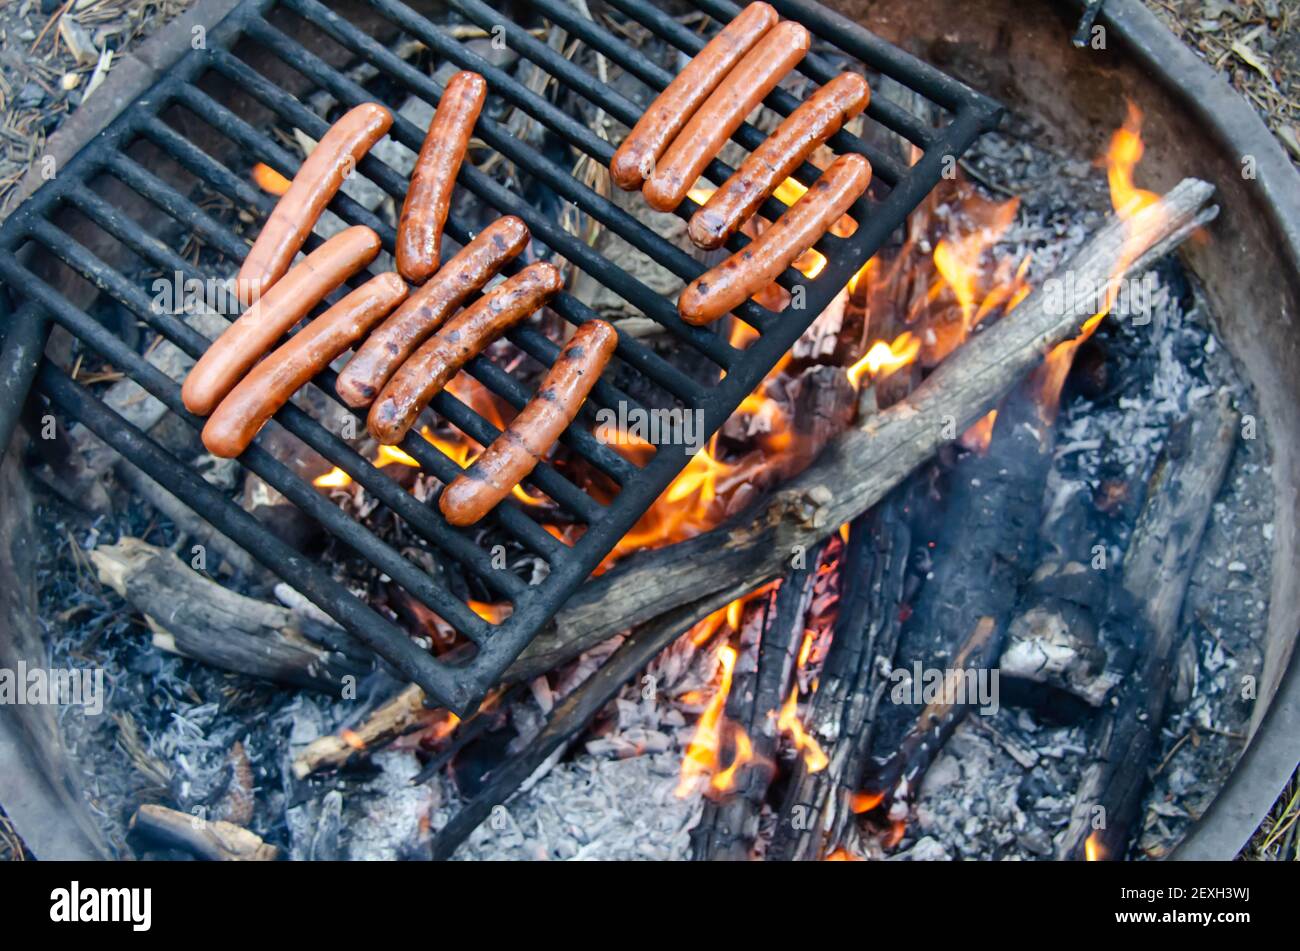 Braten Hotdog über offenem Feuer Lagerfeuer. Grillen köstliche Fleisch Hot  Dog über der Feuerstelle. Camping und Kochen Picknick Mittag-oder  Abendessen im Freien Stockfotografie - Alamy